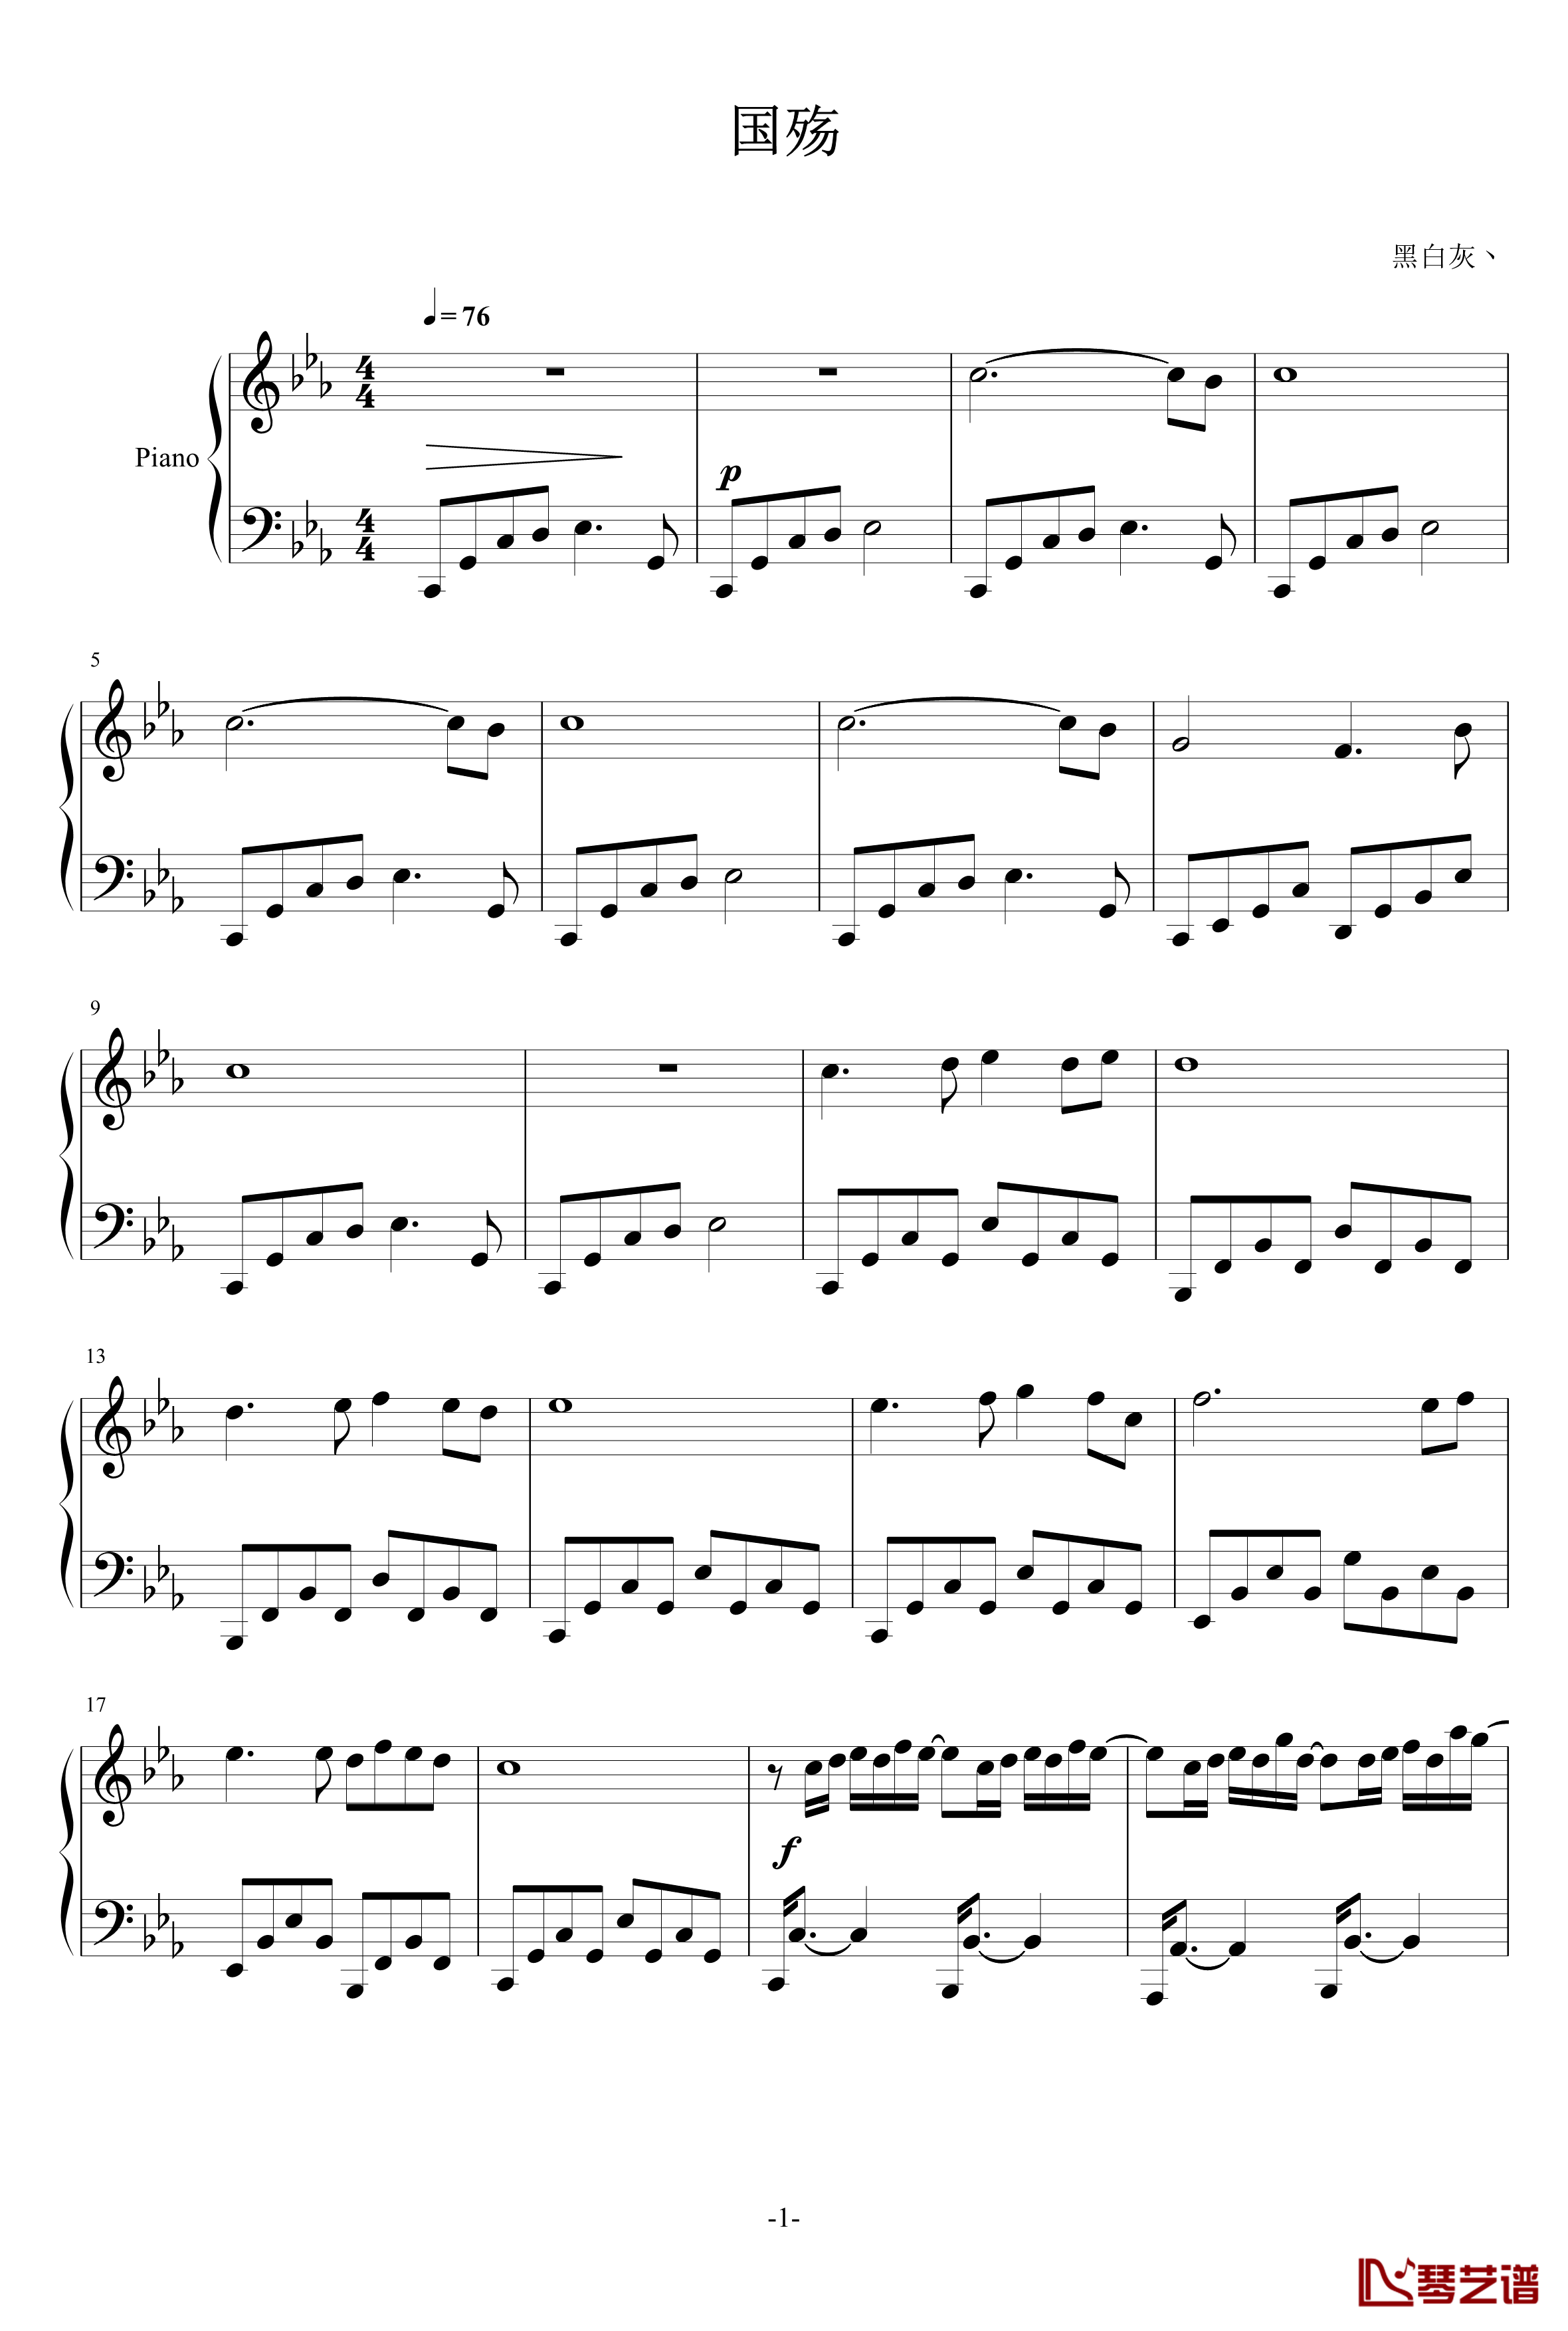 国殇钢琴谱-完整版-黑白灰丶1